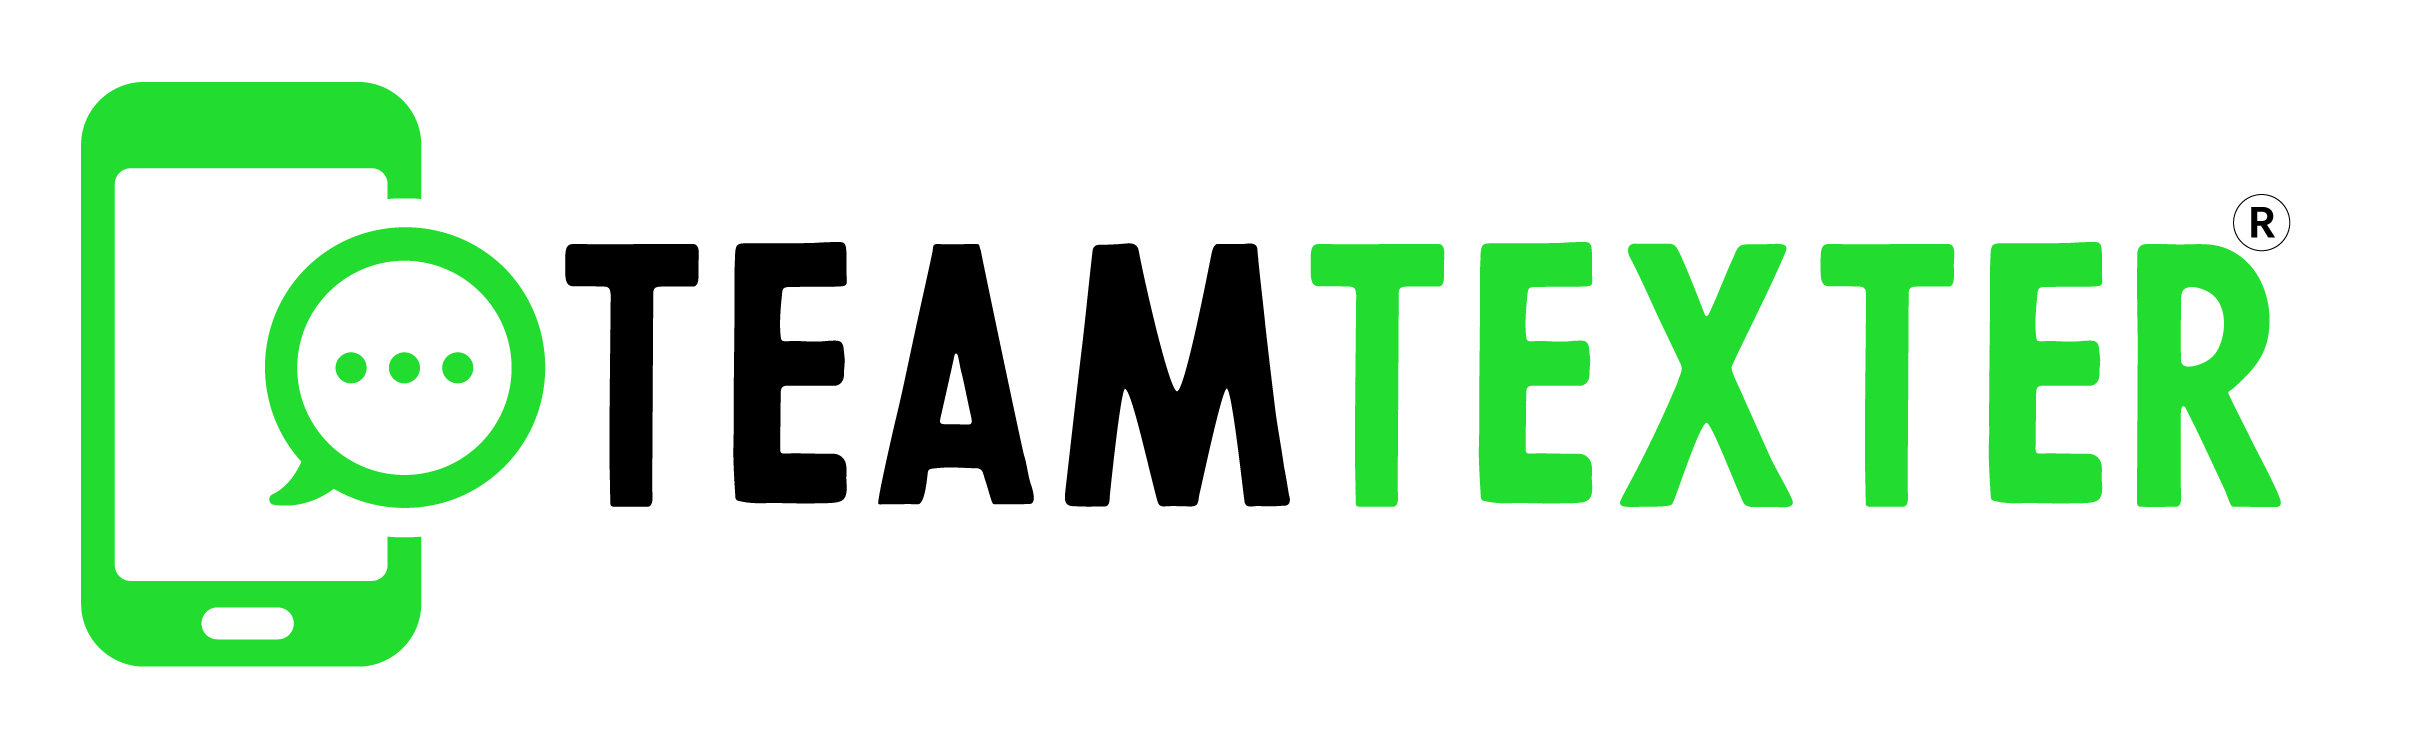 teamtexter